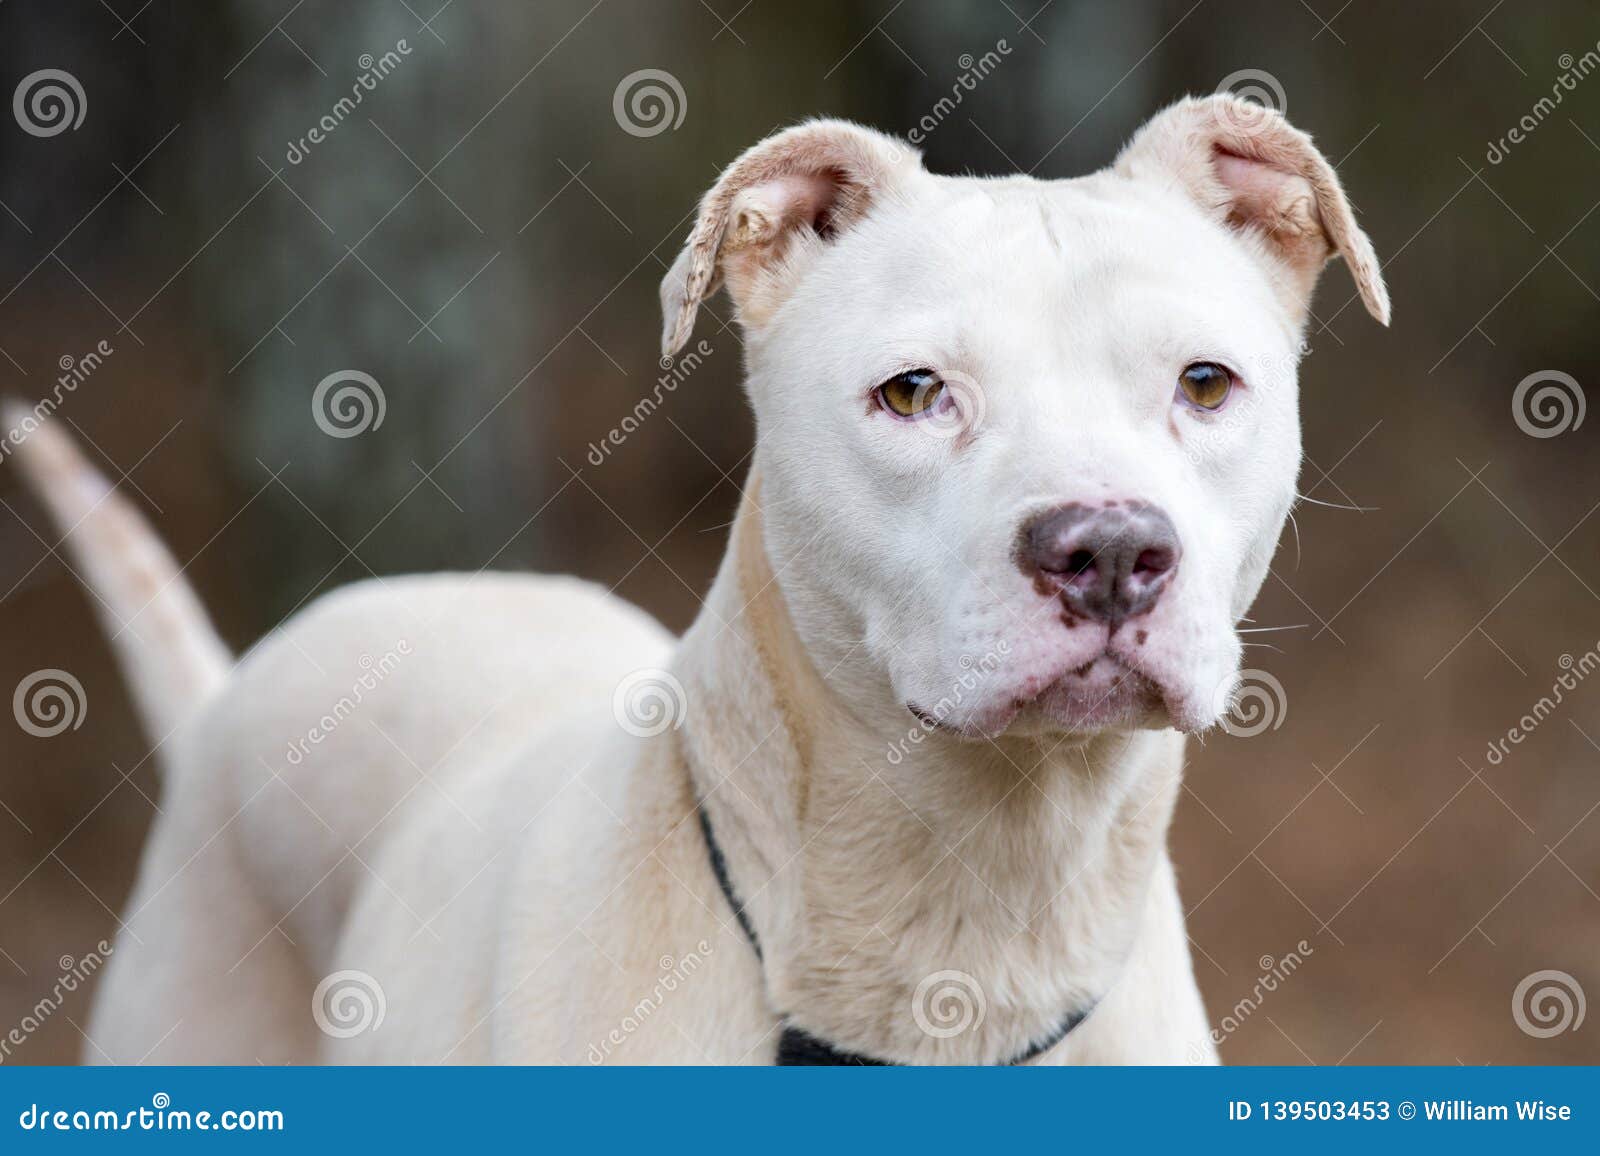 Female White American Pitbull Terrier Stock Image Image